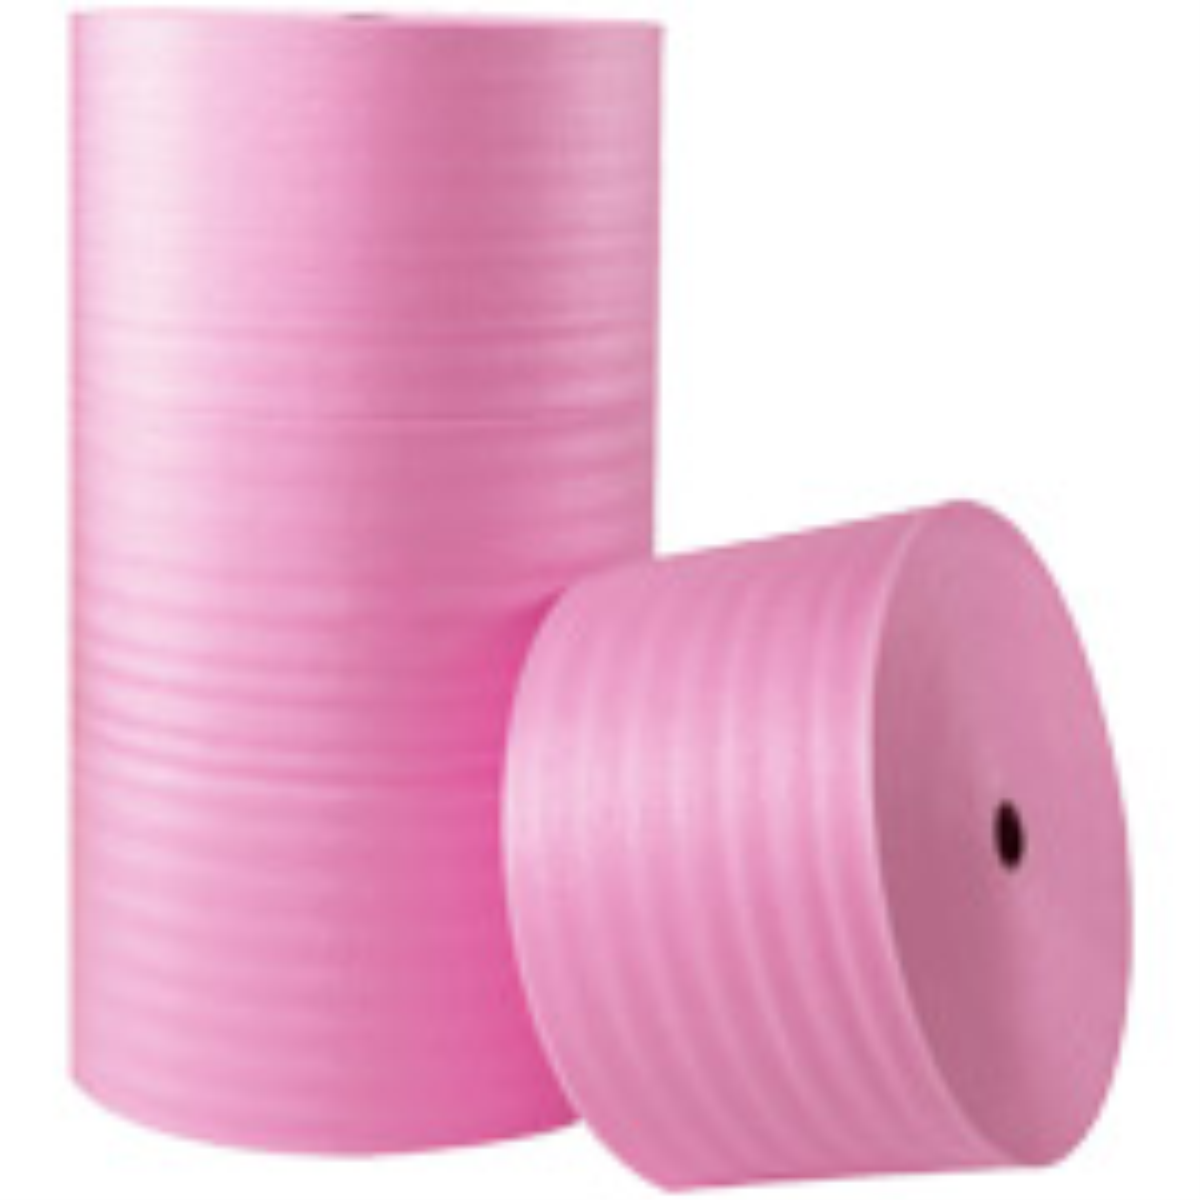 1/4″ x 72″ x 250′ Perforated Anti-Static Air Foam Roll 1 per Bundle